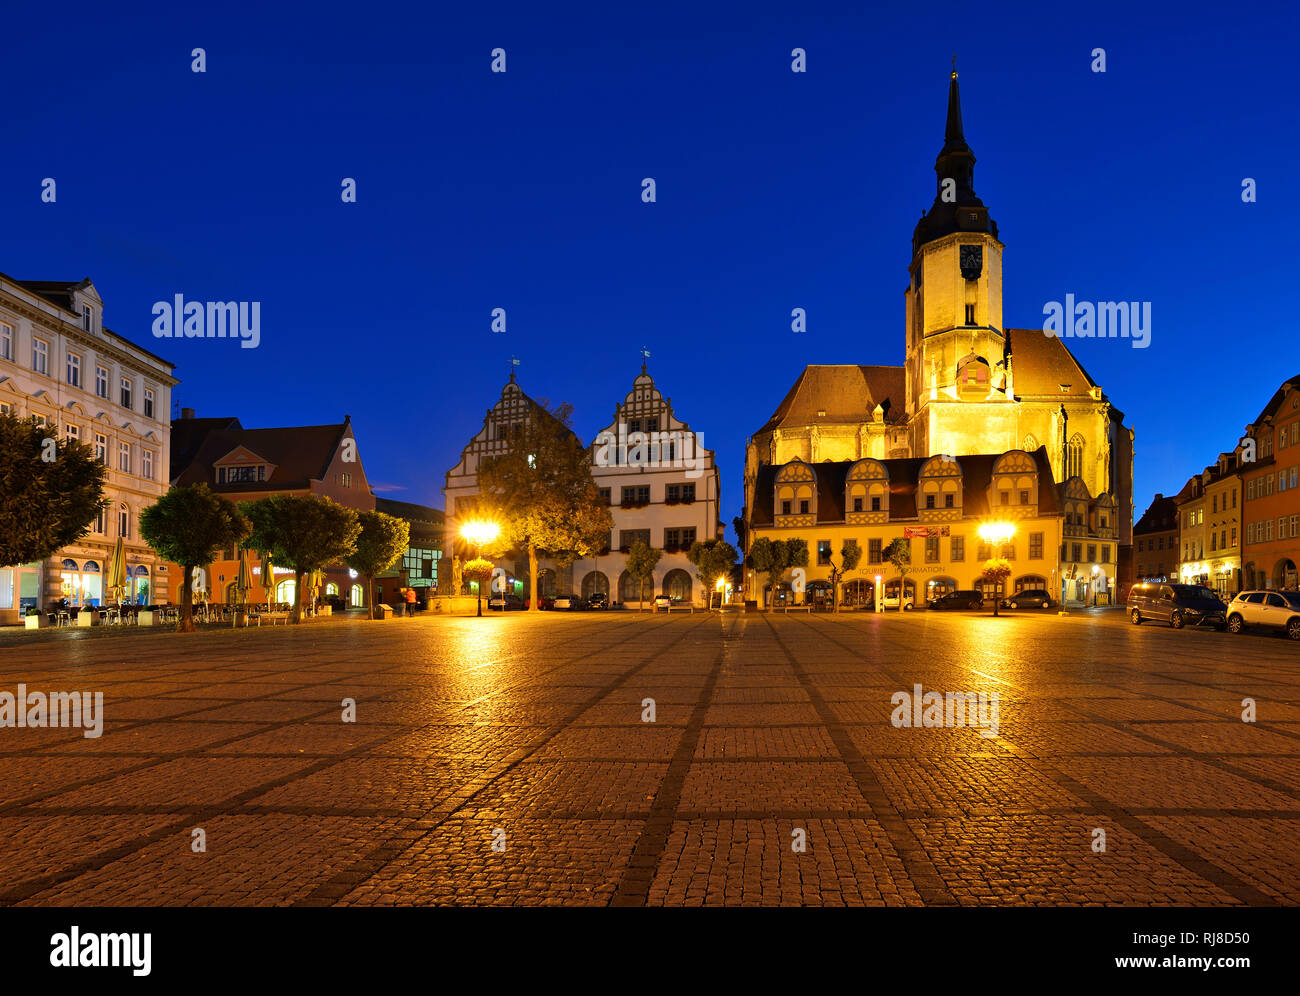 Deutschland, Sachsen-Anhalt, Naumburg, Bürgerhäuser und Wenzelskirche am Marktplatz, Nachtaufnahme Stock Photo